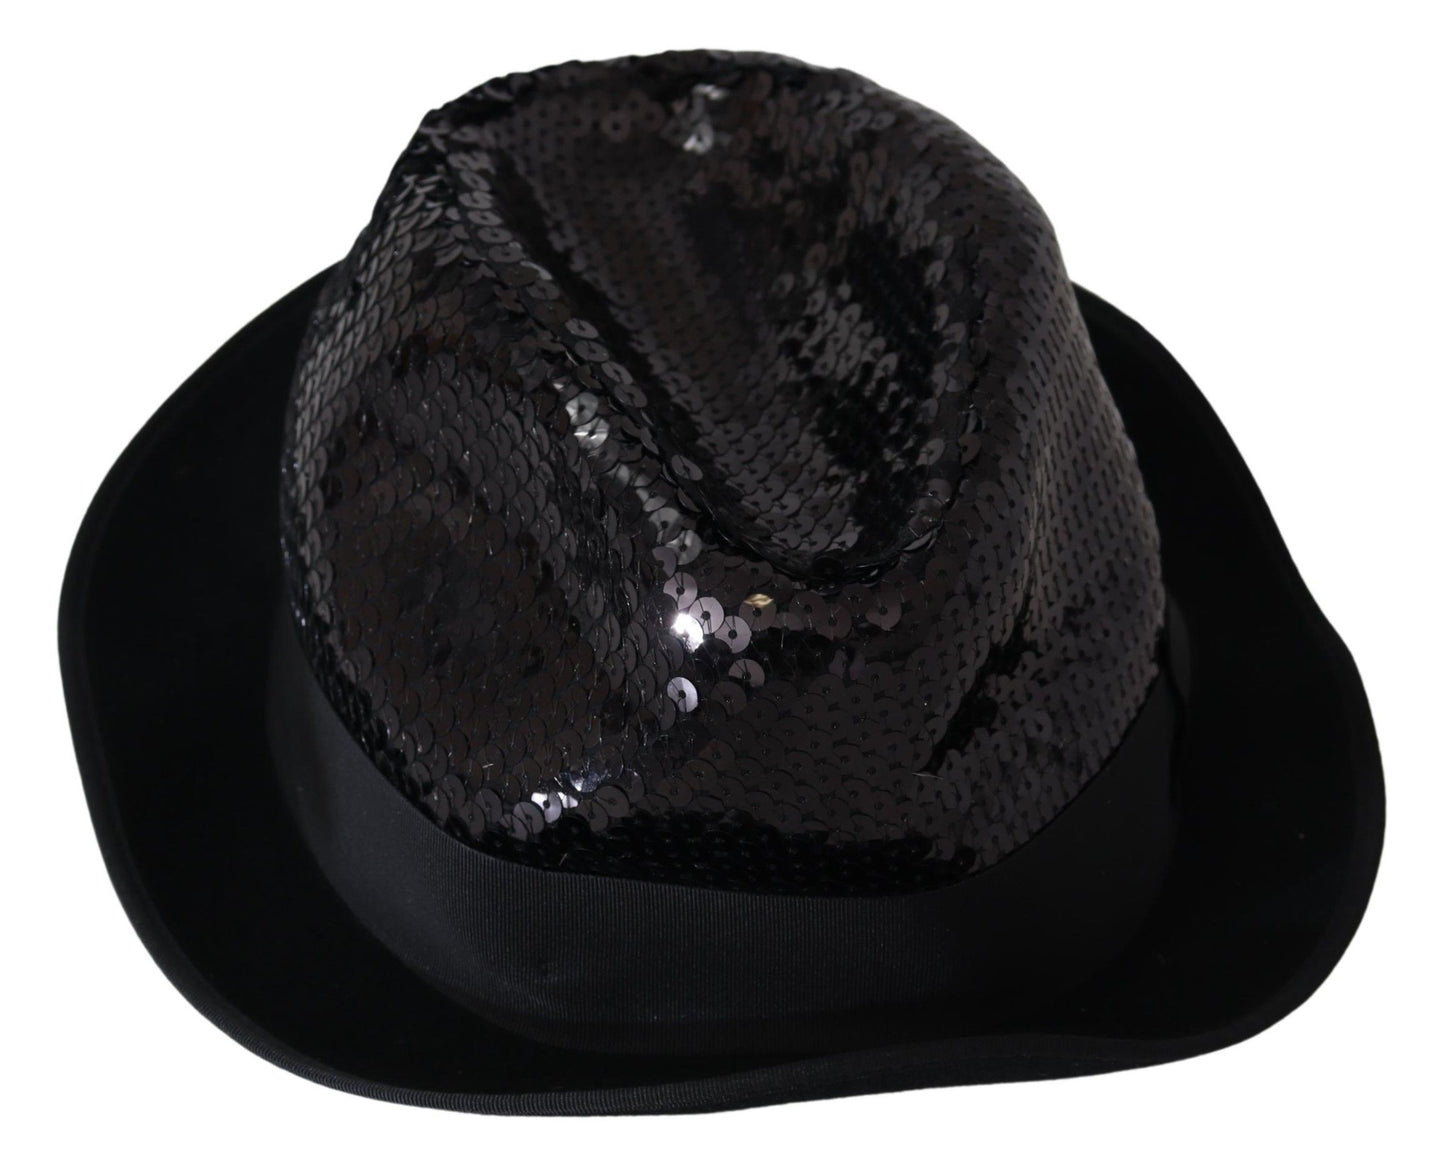 Dolce & gabbana black sequin fedora hat